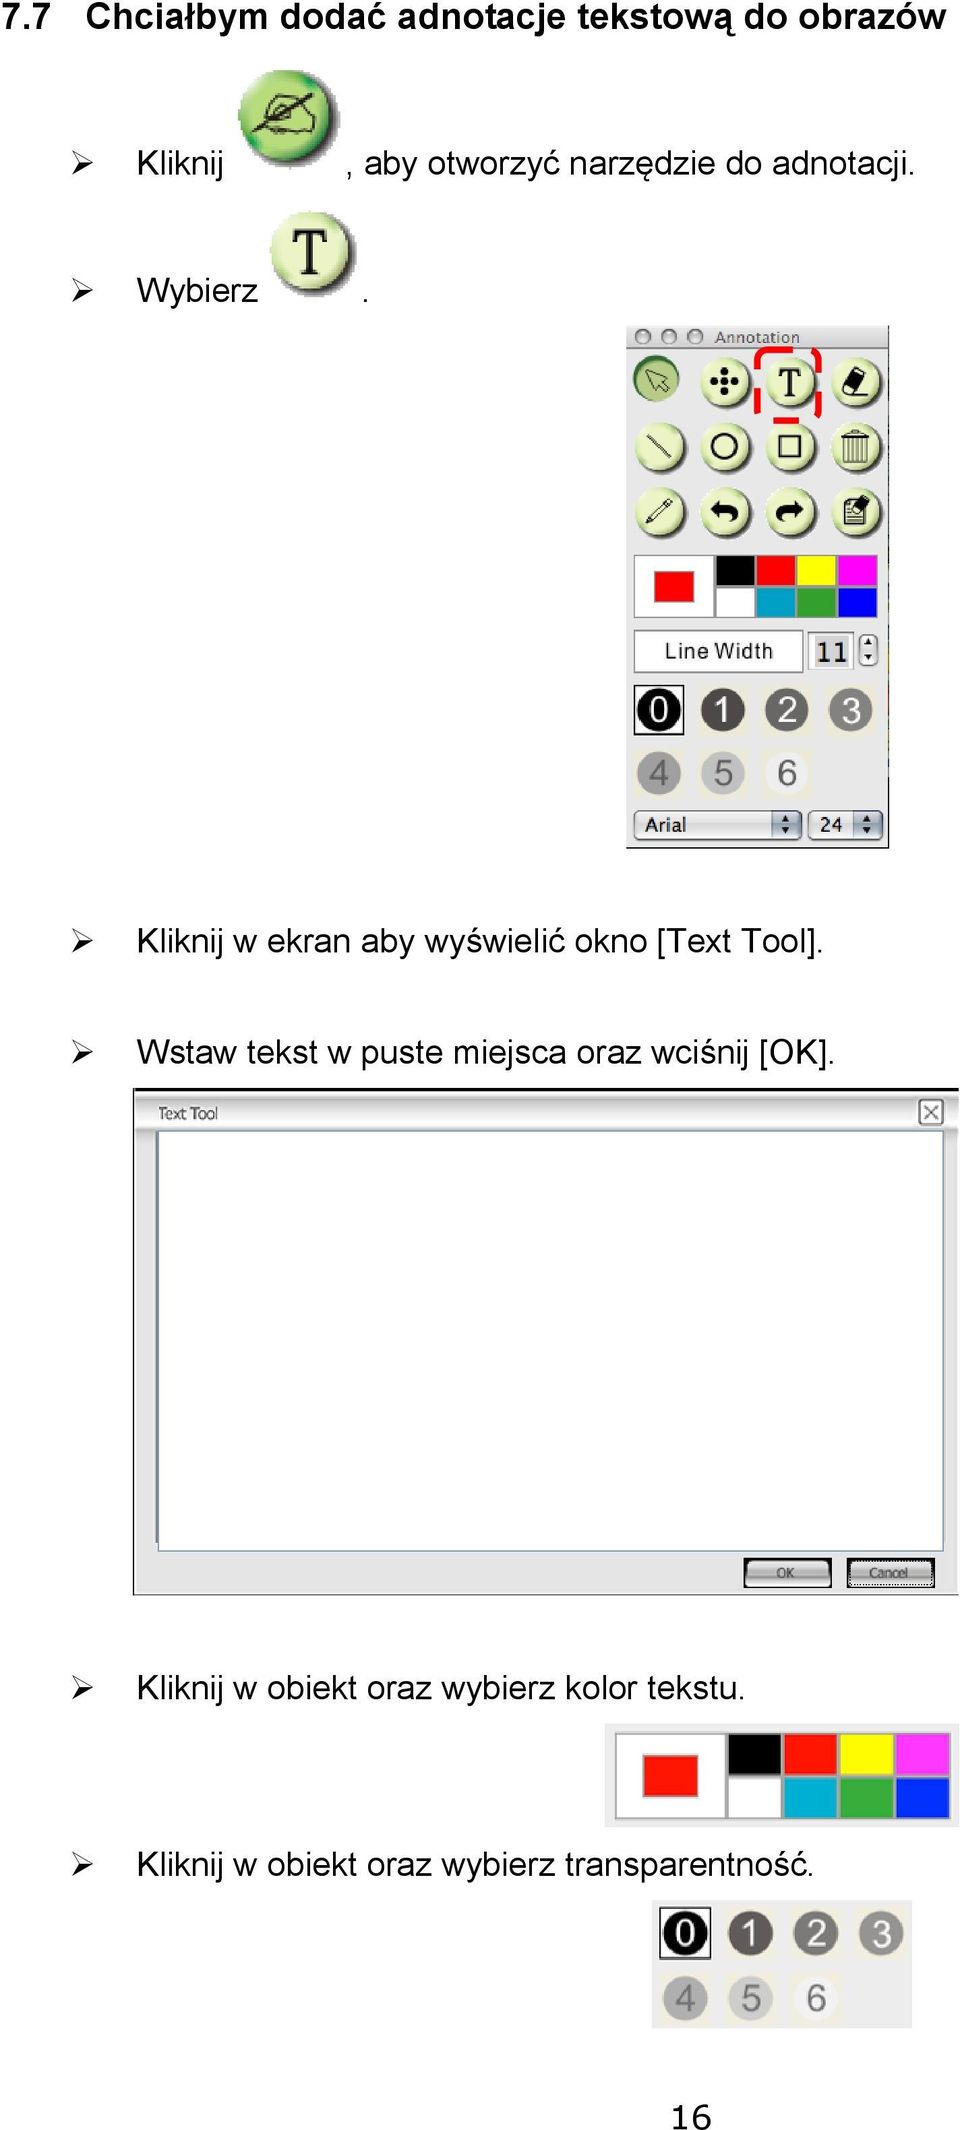 Kliknij w ekran aby wyświelić okno [Text Tool].